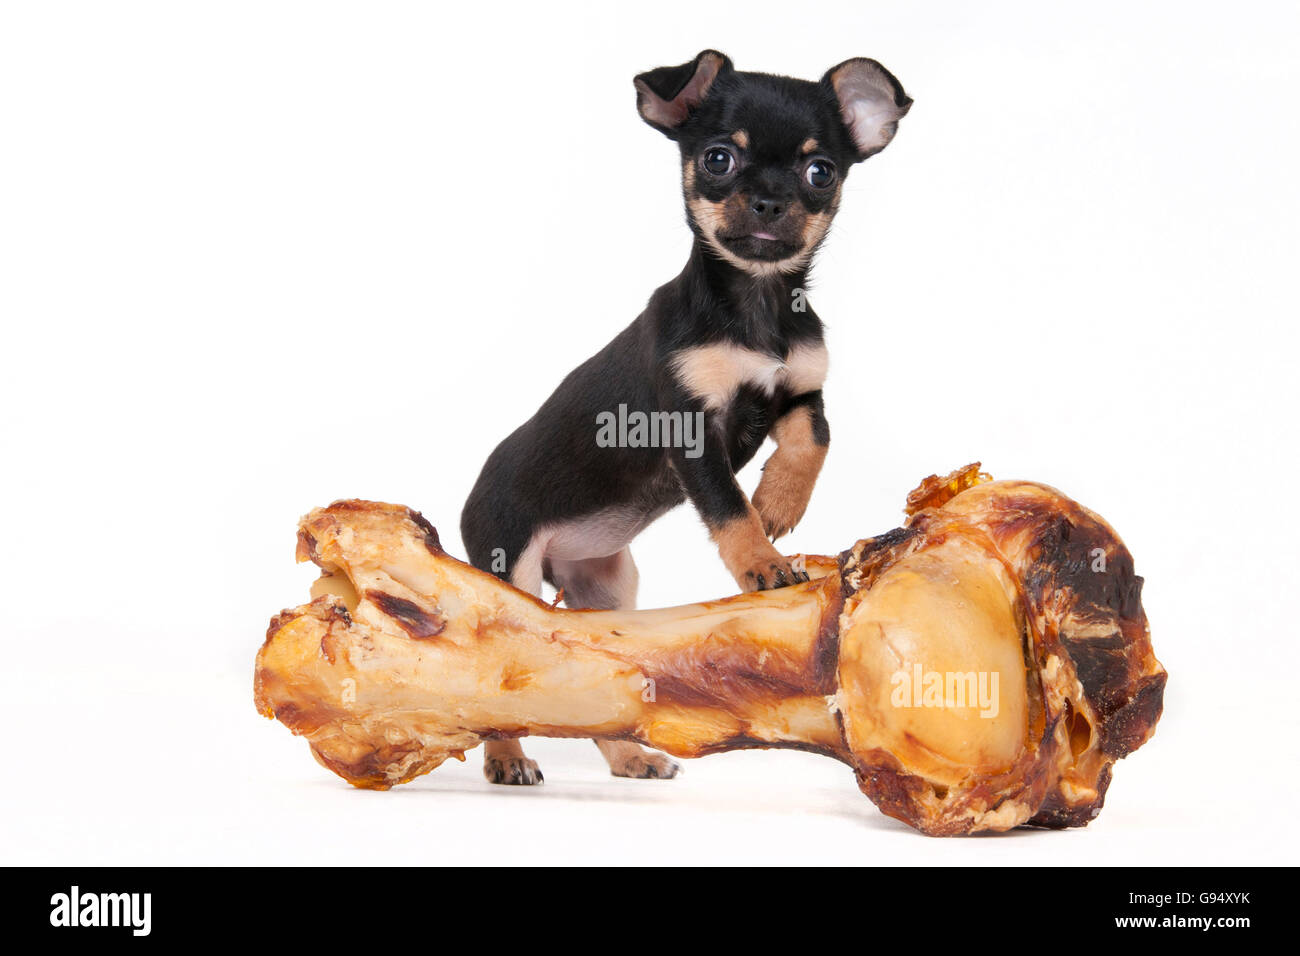 Chihuahua, chiot, à poil court, 11 semaines, noir et feu, et big bone / manteau lisse Banque D'Images